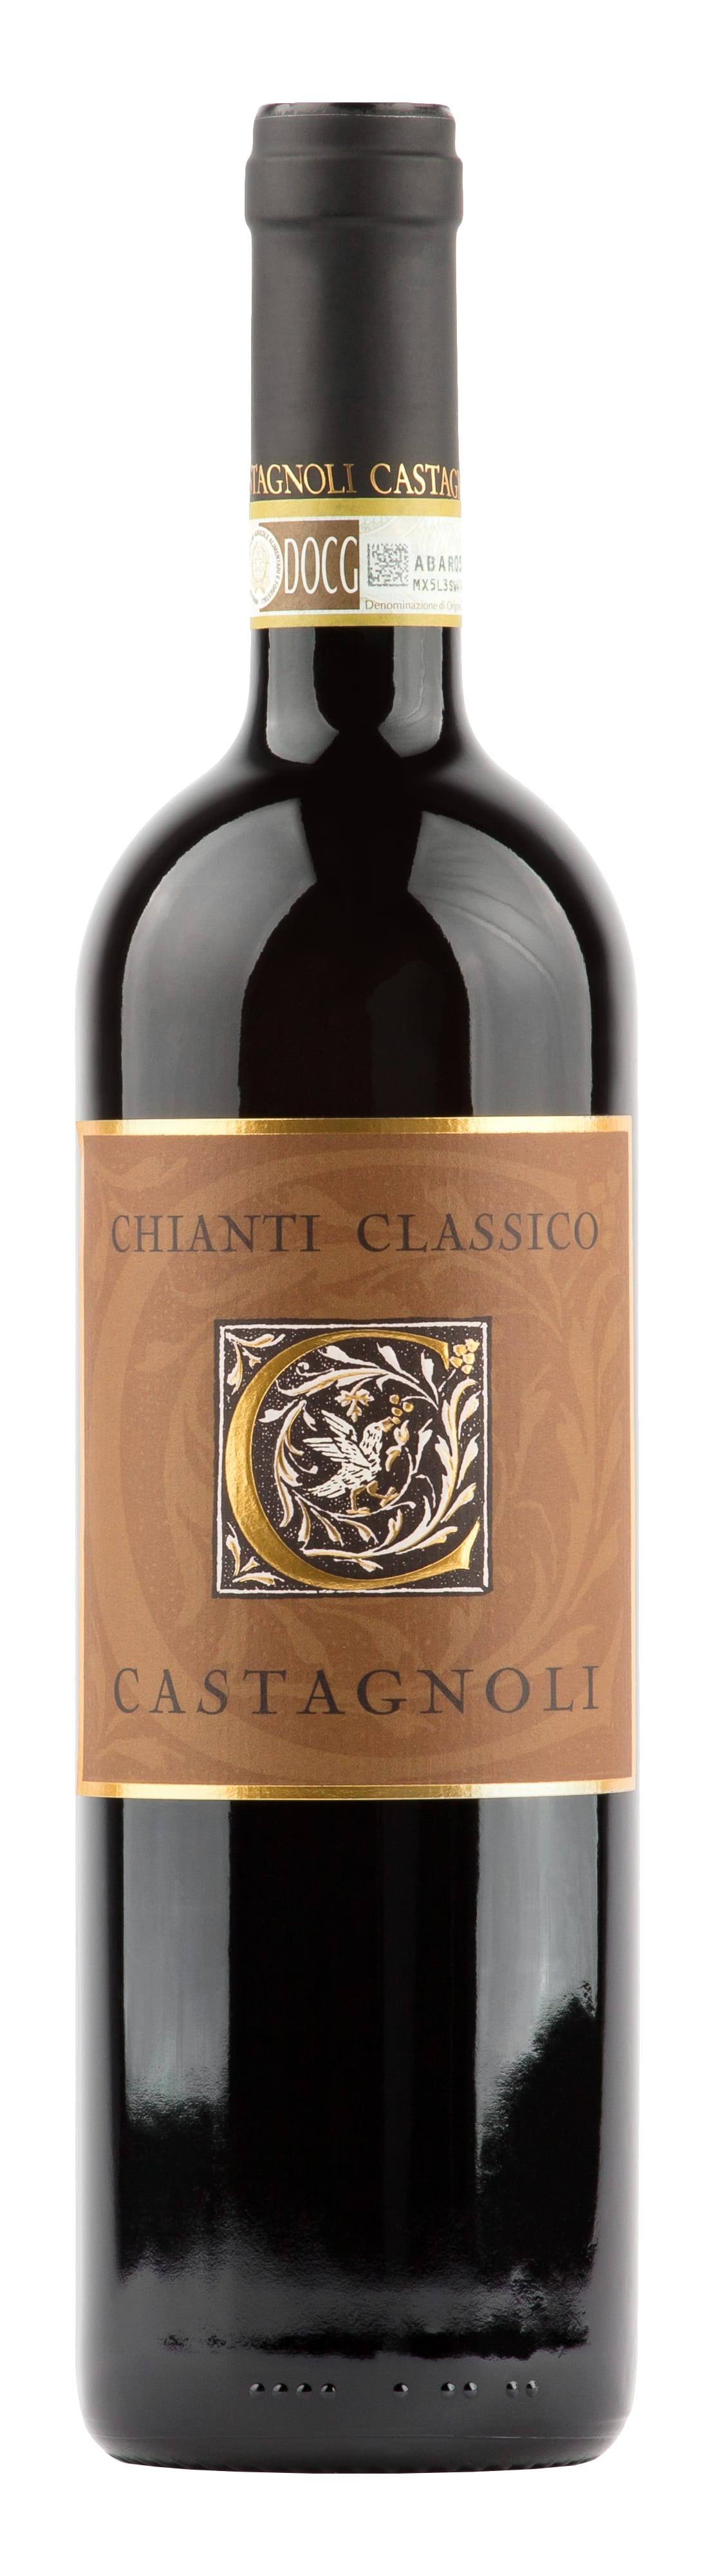 Castagnoli Chianti Classico 2013 / 750 ml.